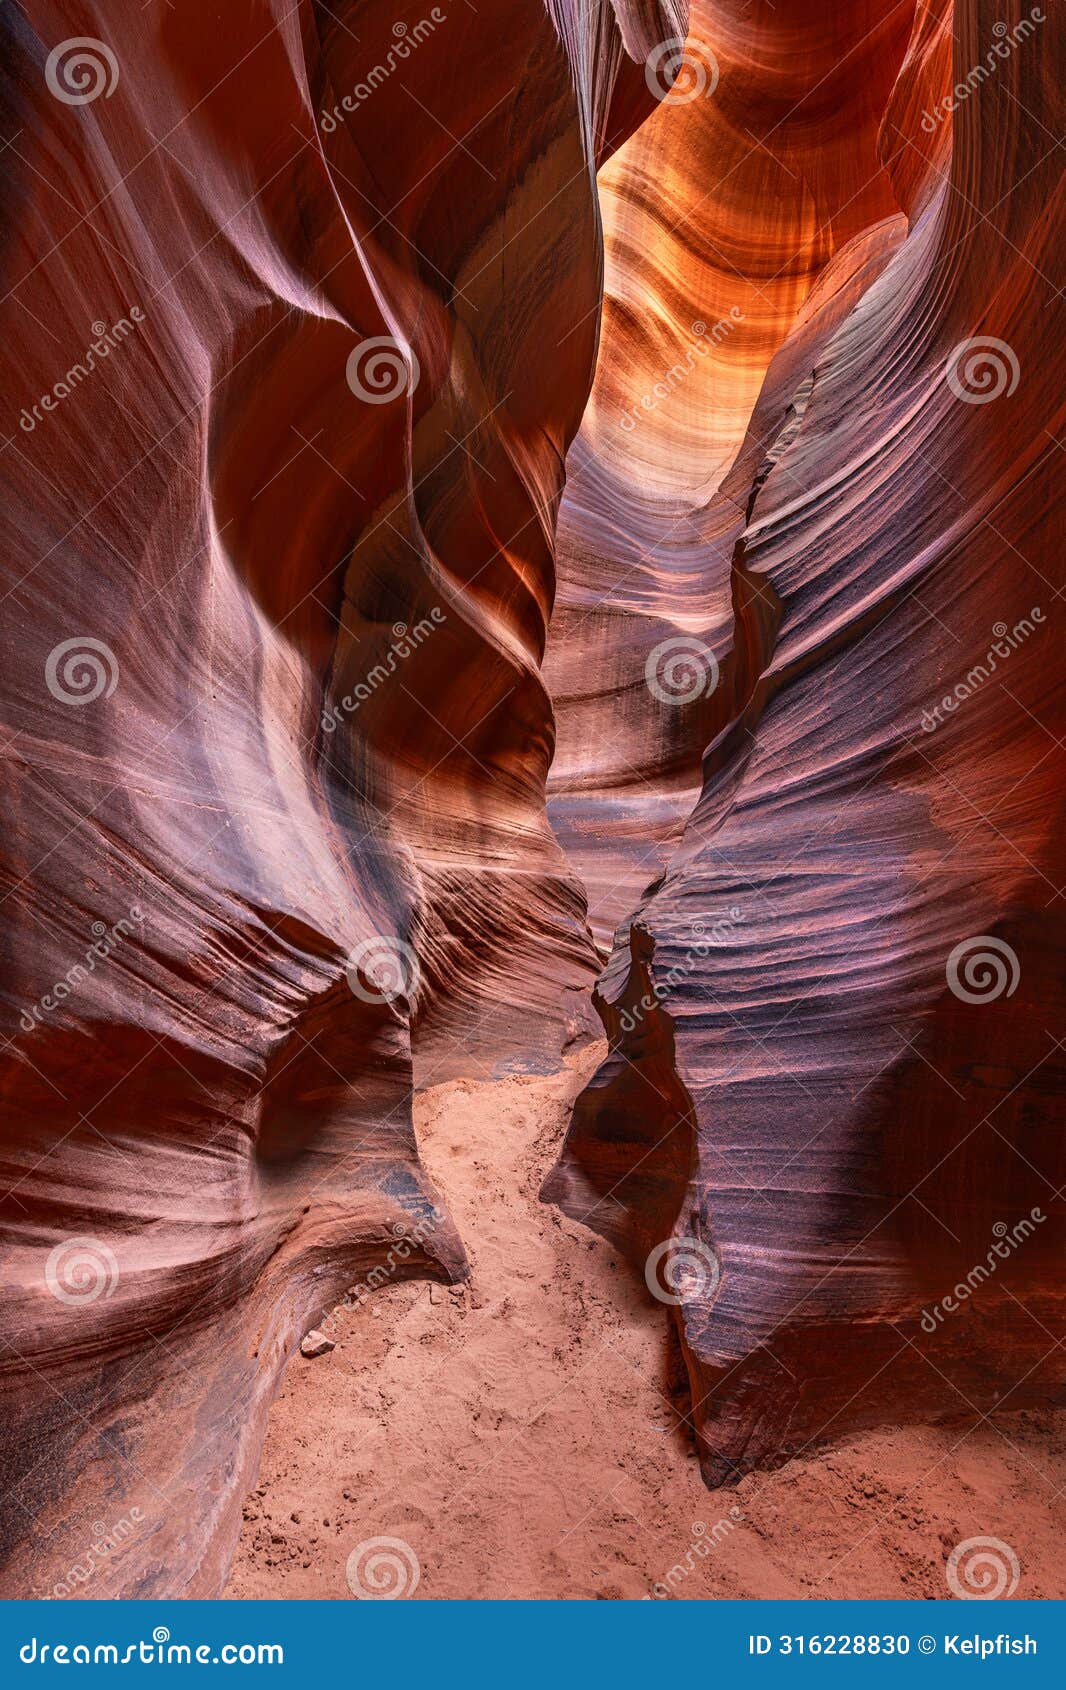 cardiac slot canyonin arizona